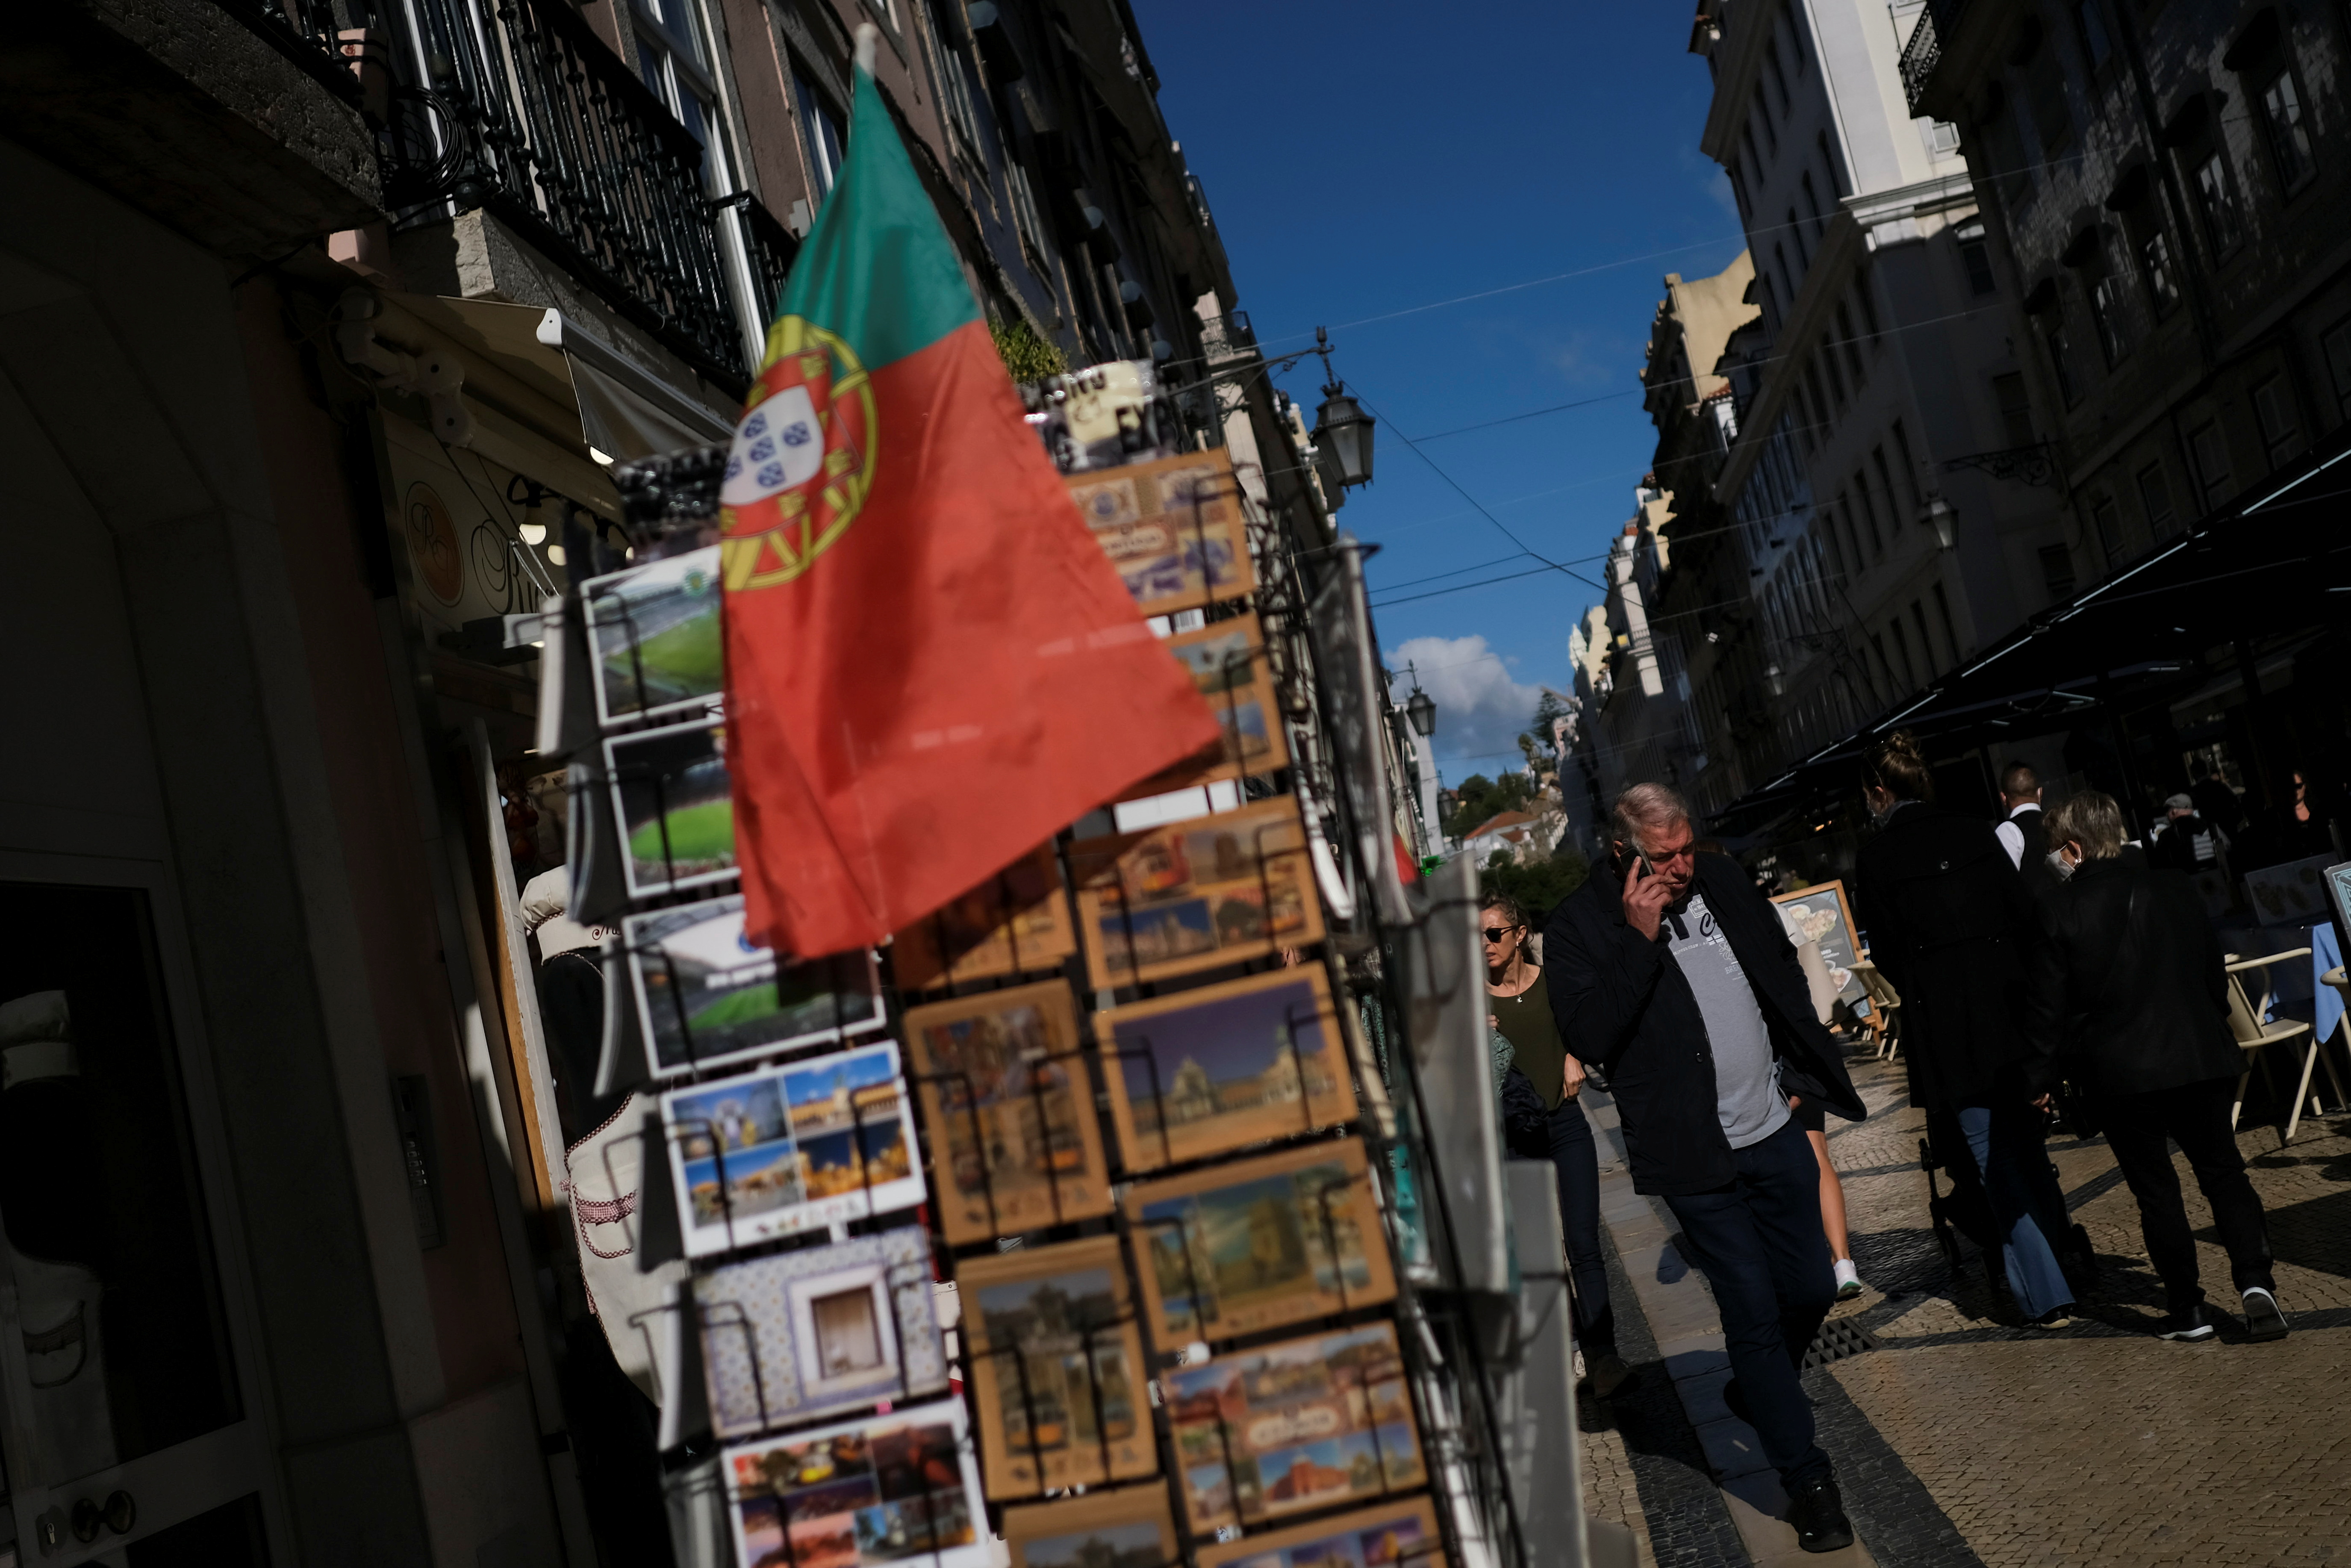 People walk along a street in downtown Lisbon